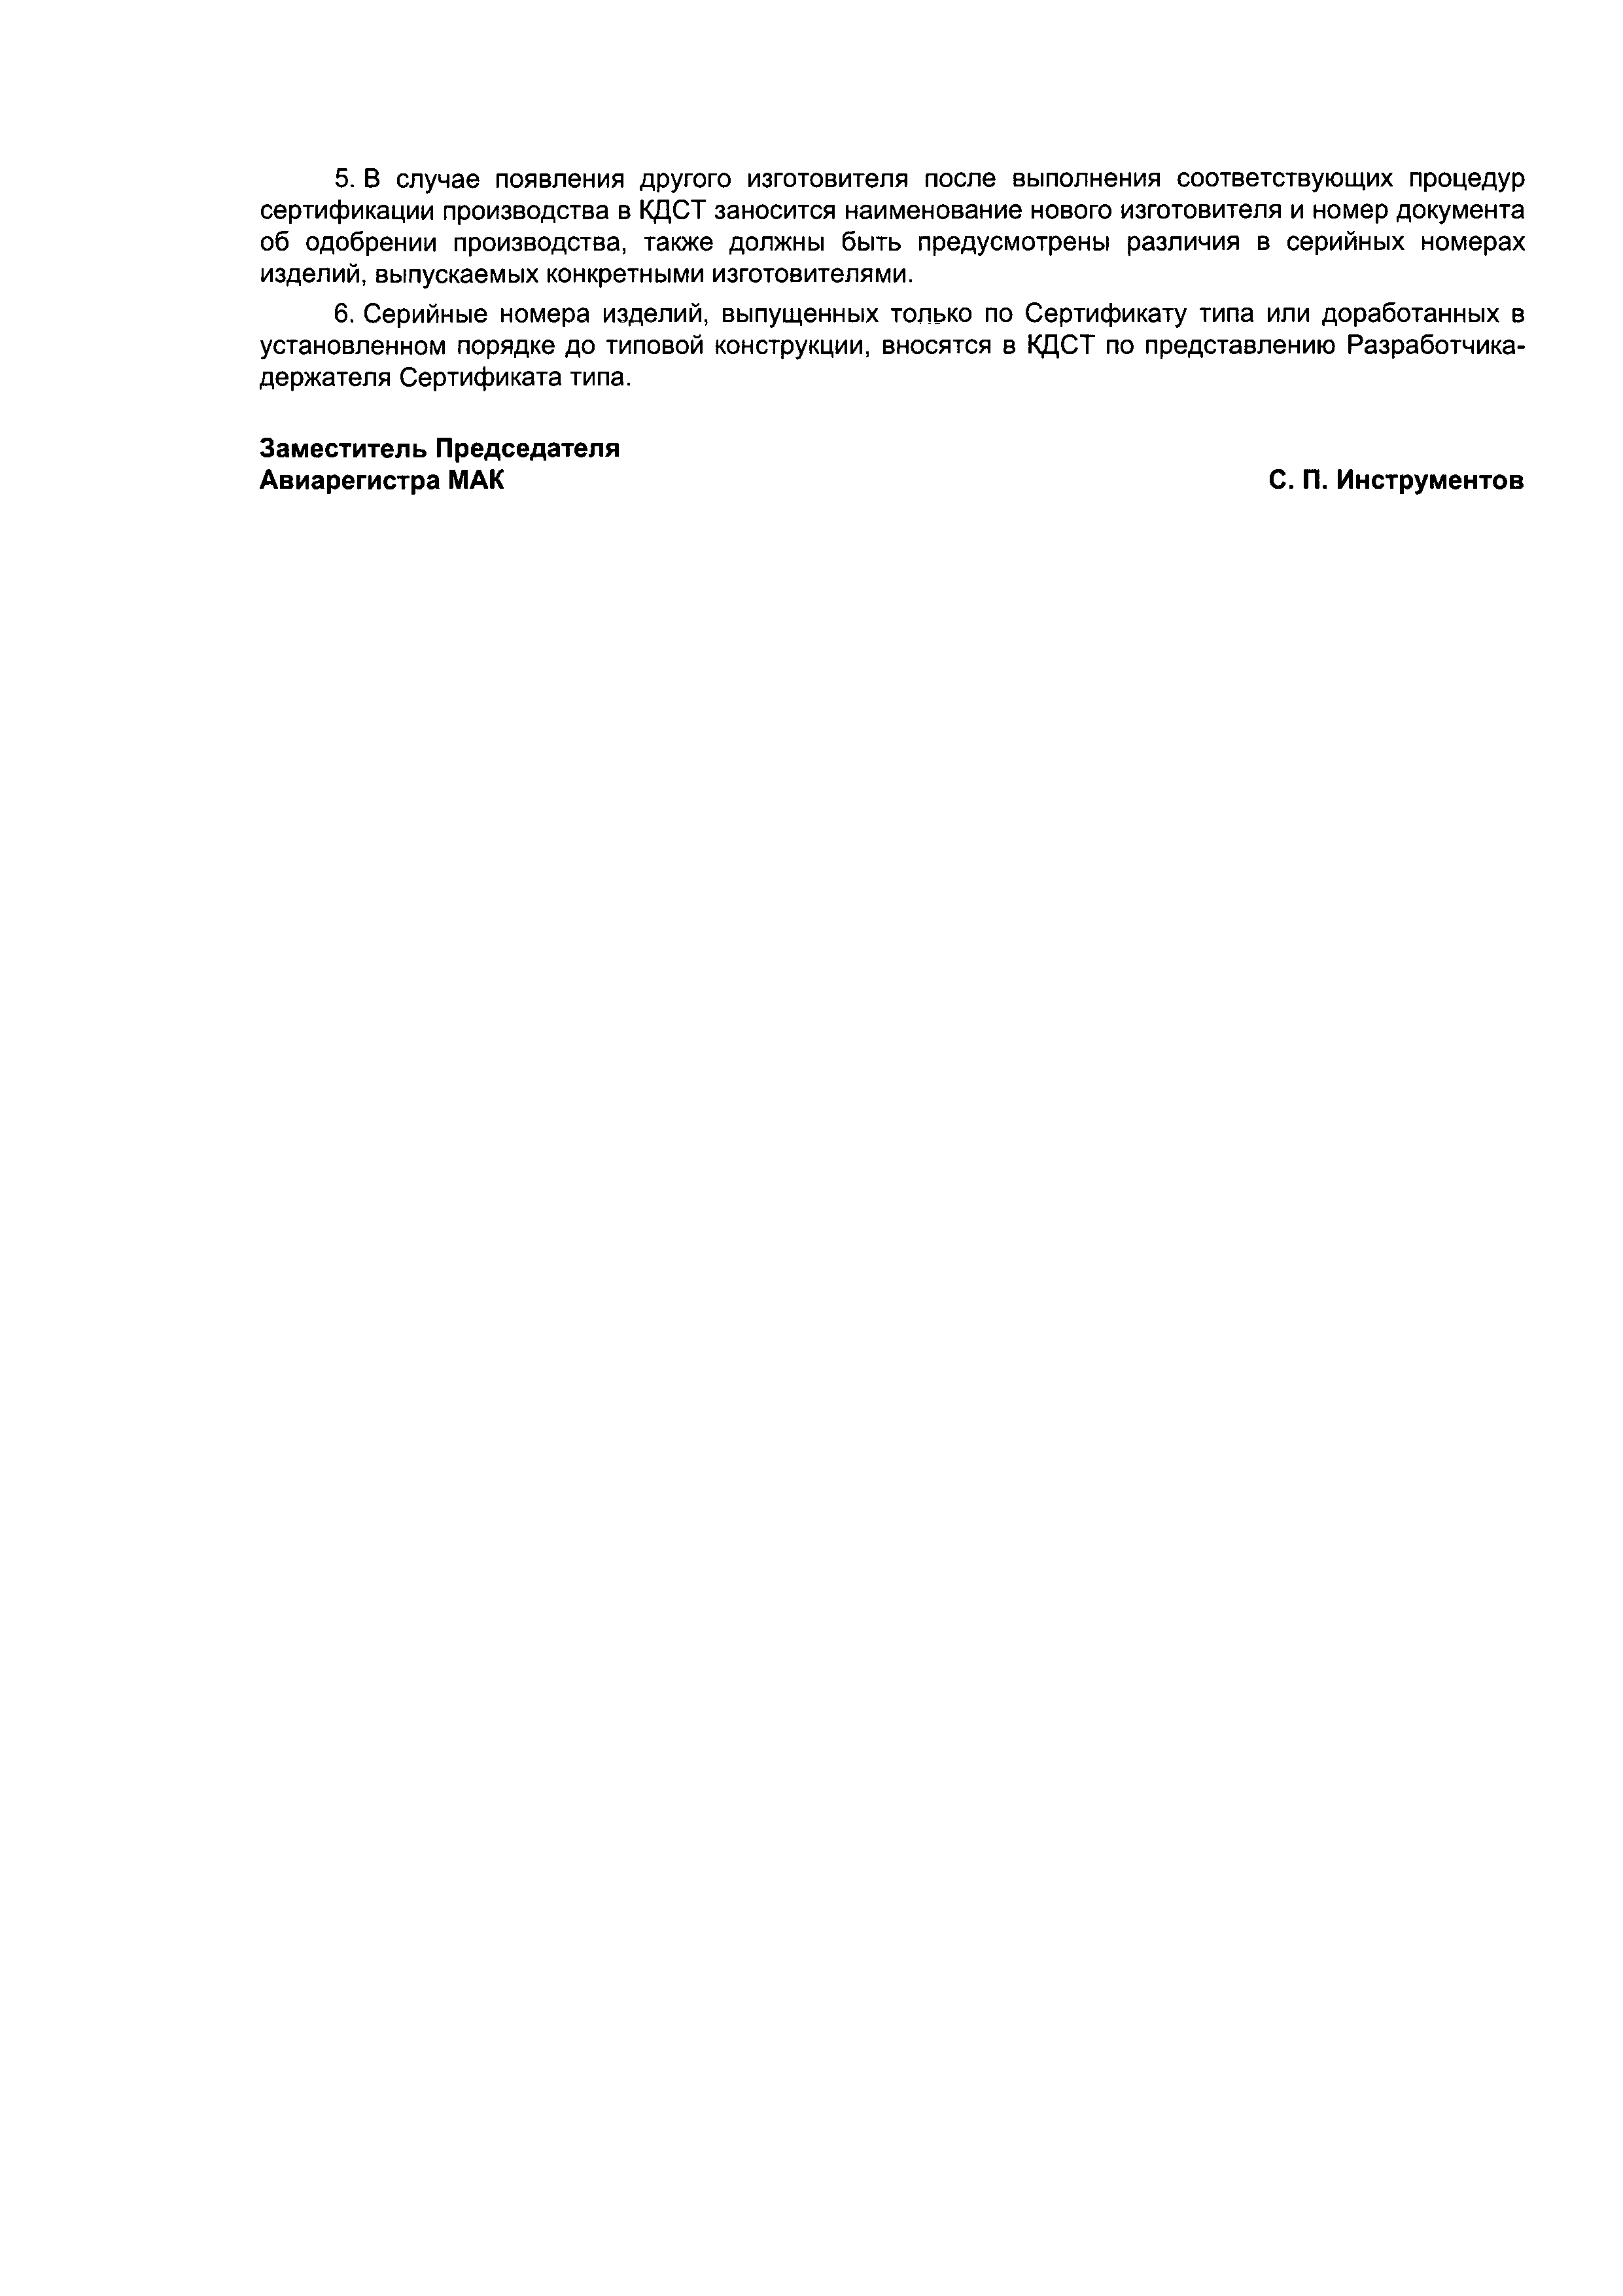 Директивное письмо 7-2001